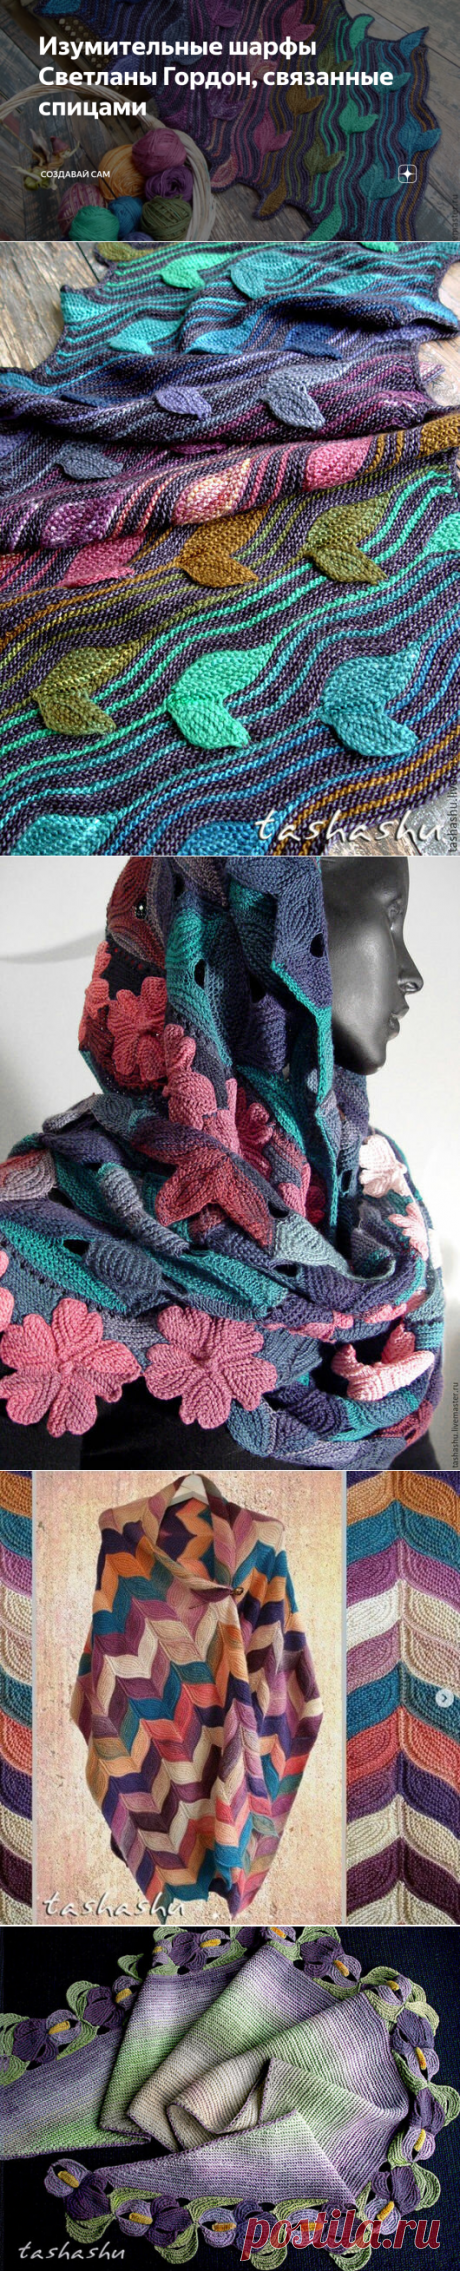 Изумительные шарфы Светланы Гордон, связанные спицами | Создавай сам | Яндекс Дзен